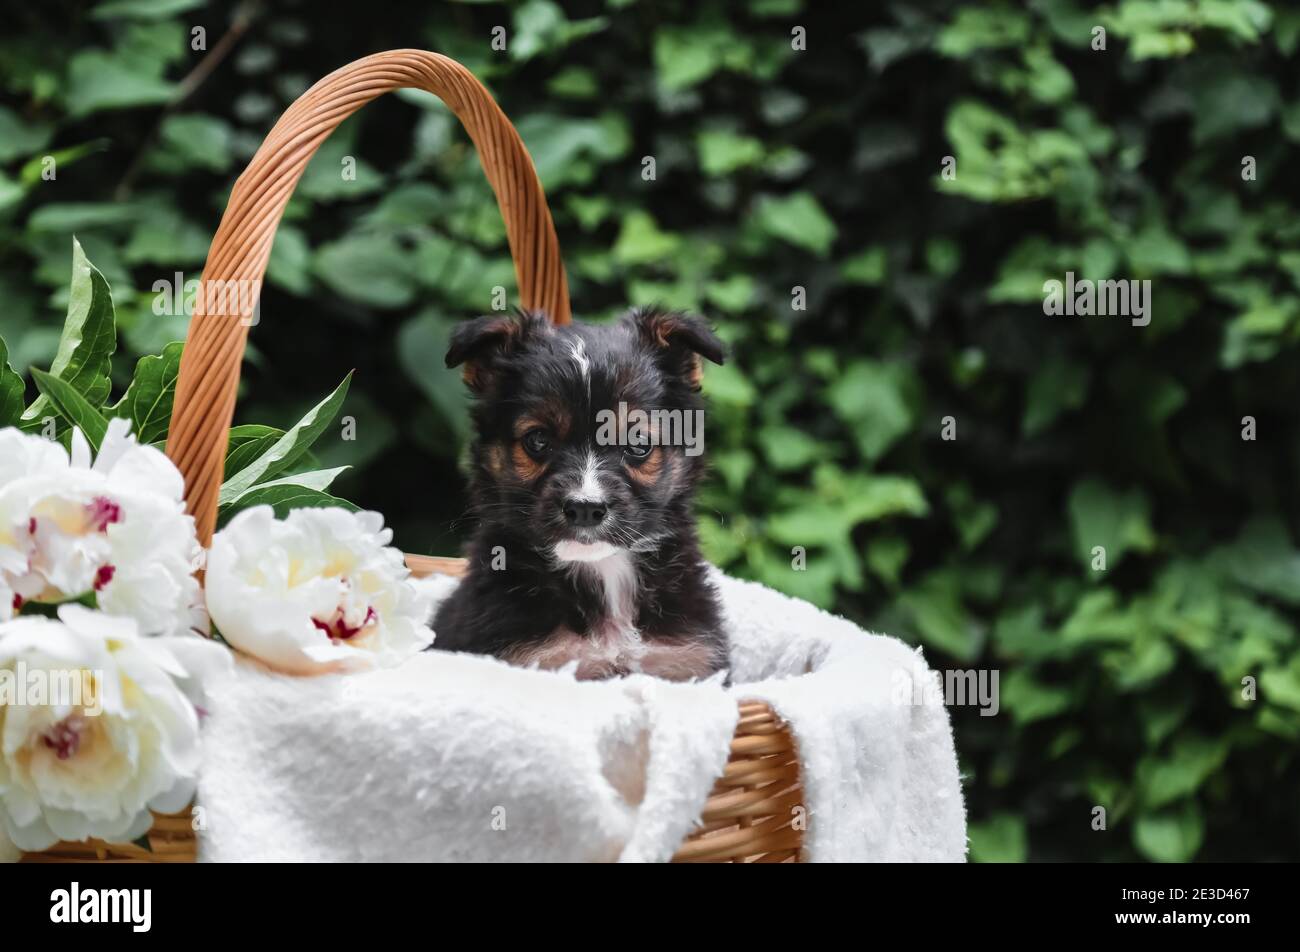 Il cane cucciolo nero si siede nel cesto sullo sfondo della natura verde. Buon cane pooch, non purebred su coperta bianca con fiore di pony fuori in estate Foto Stock